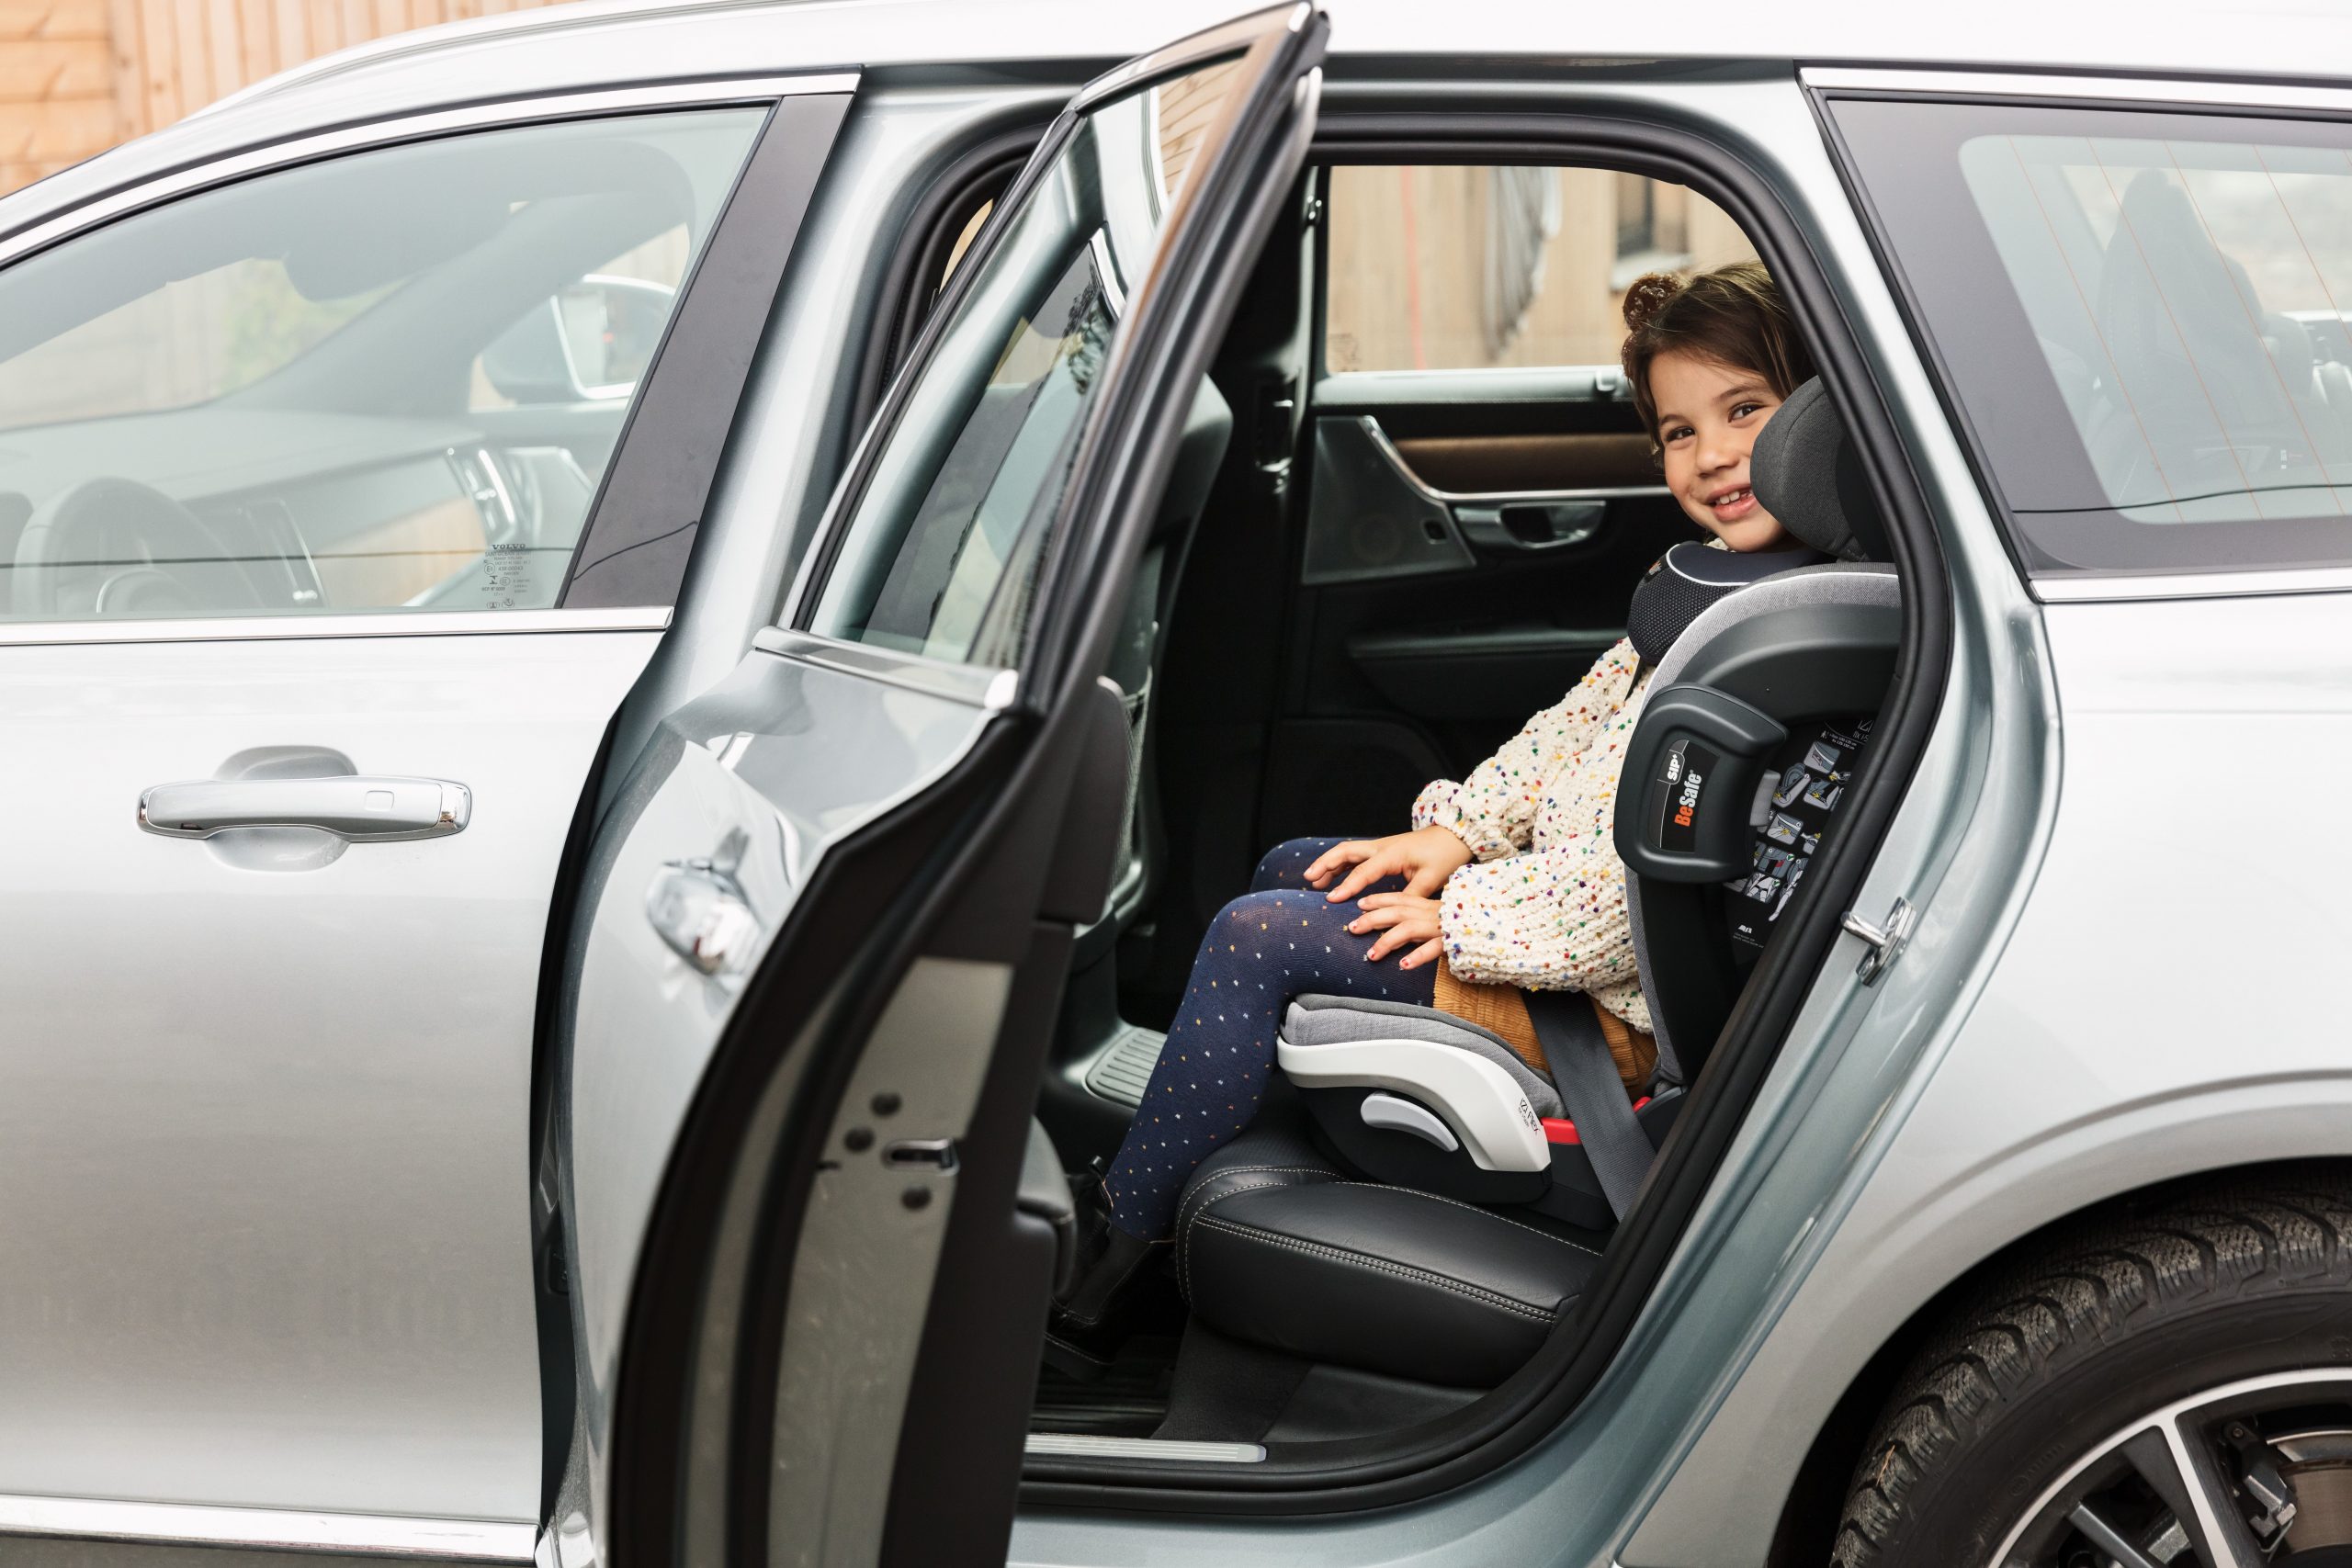 Sillas de coche para niños de 6 años - Conoce las opciones más seguras